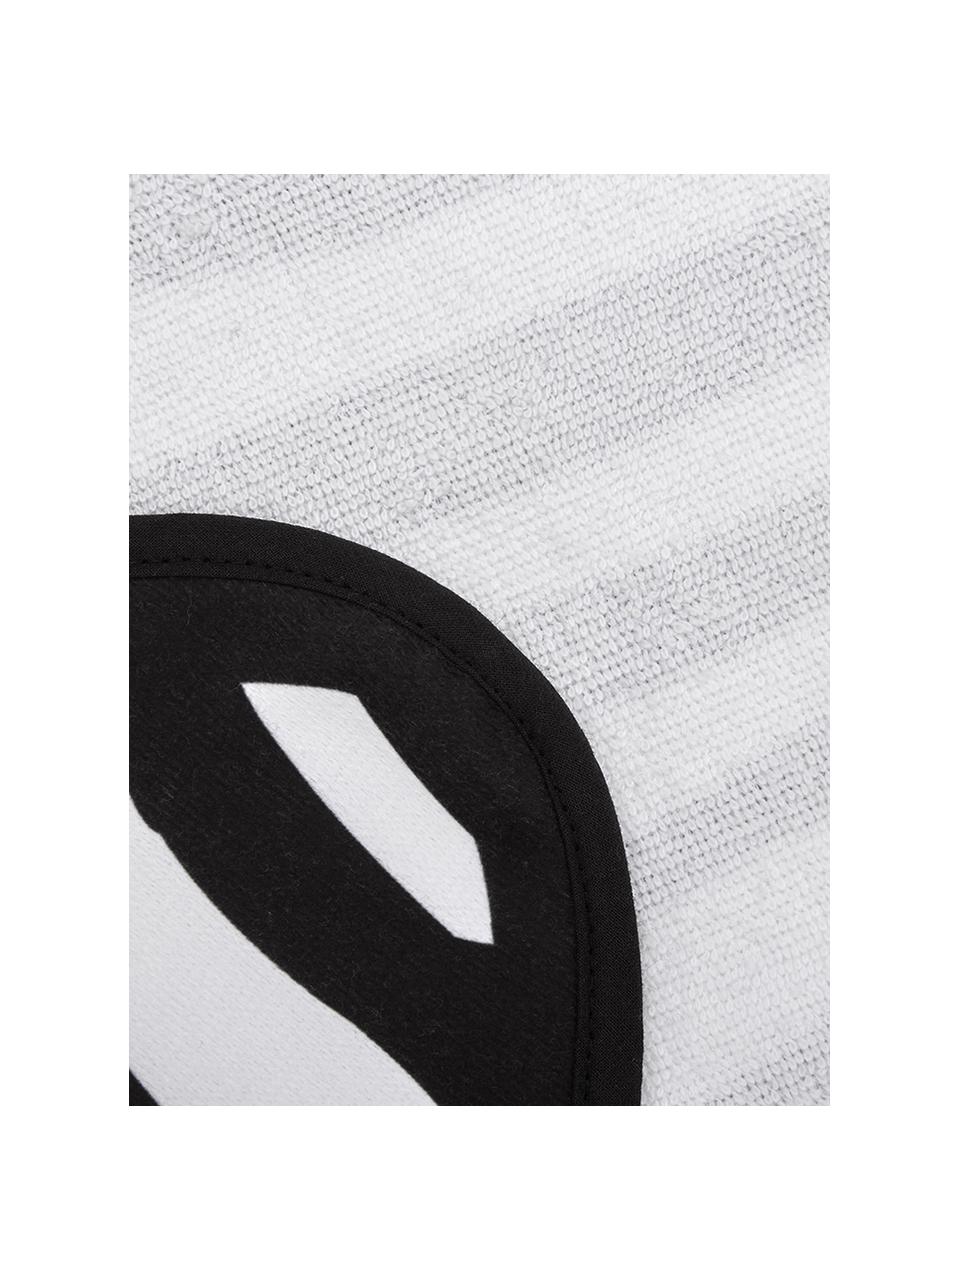 Strandlaken Wildhorse met zebra print, 55% polyester, 45% katoen
Zeer lichte kwaliteit 340 g/m², Wit met zwarte vlekken, 112 x 150 cm